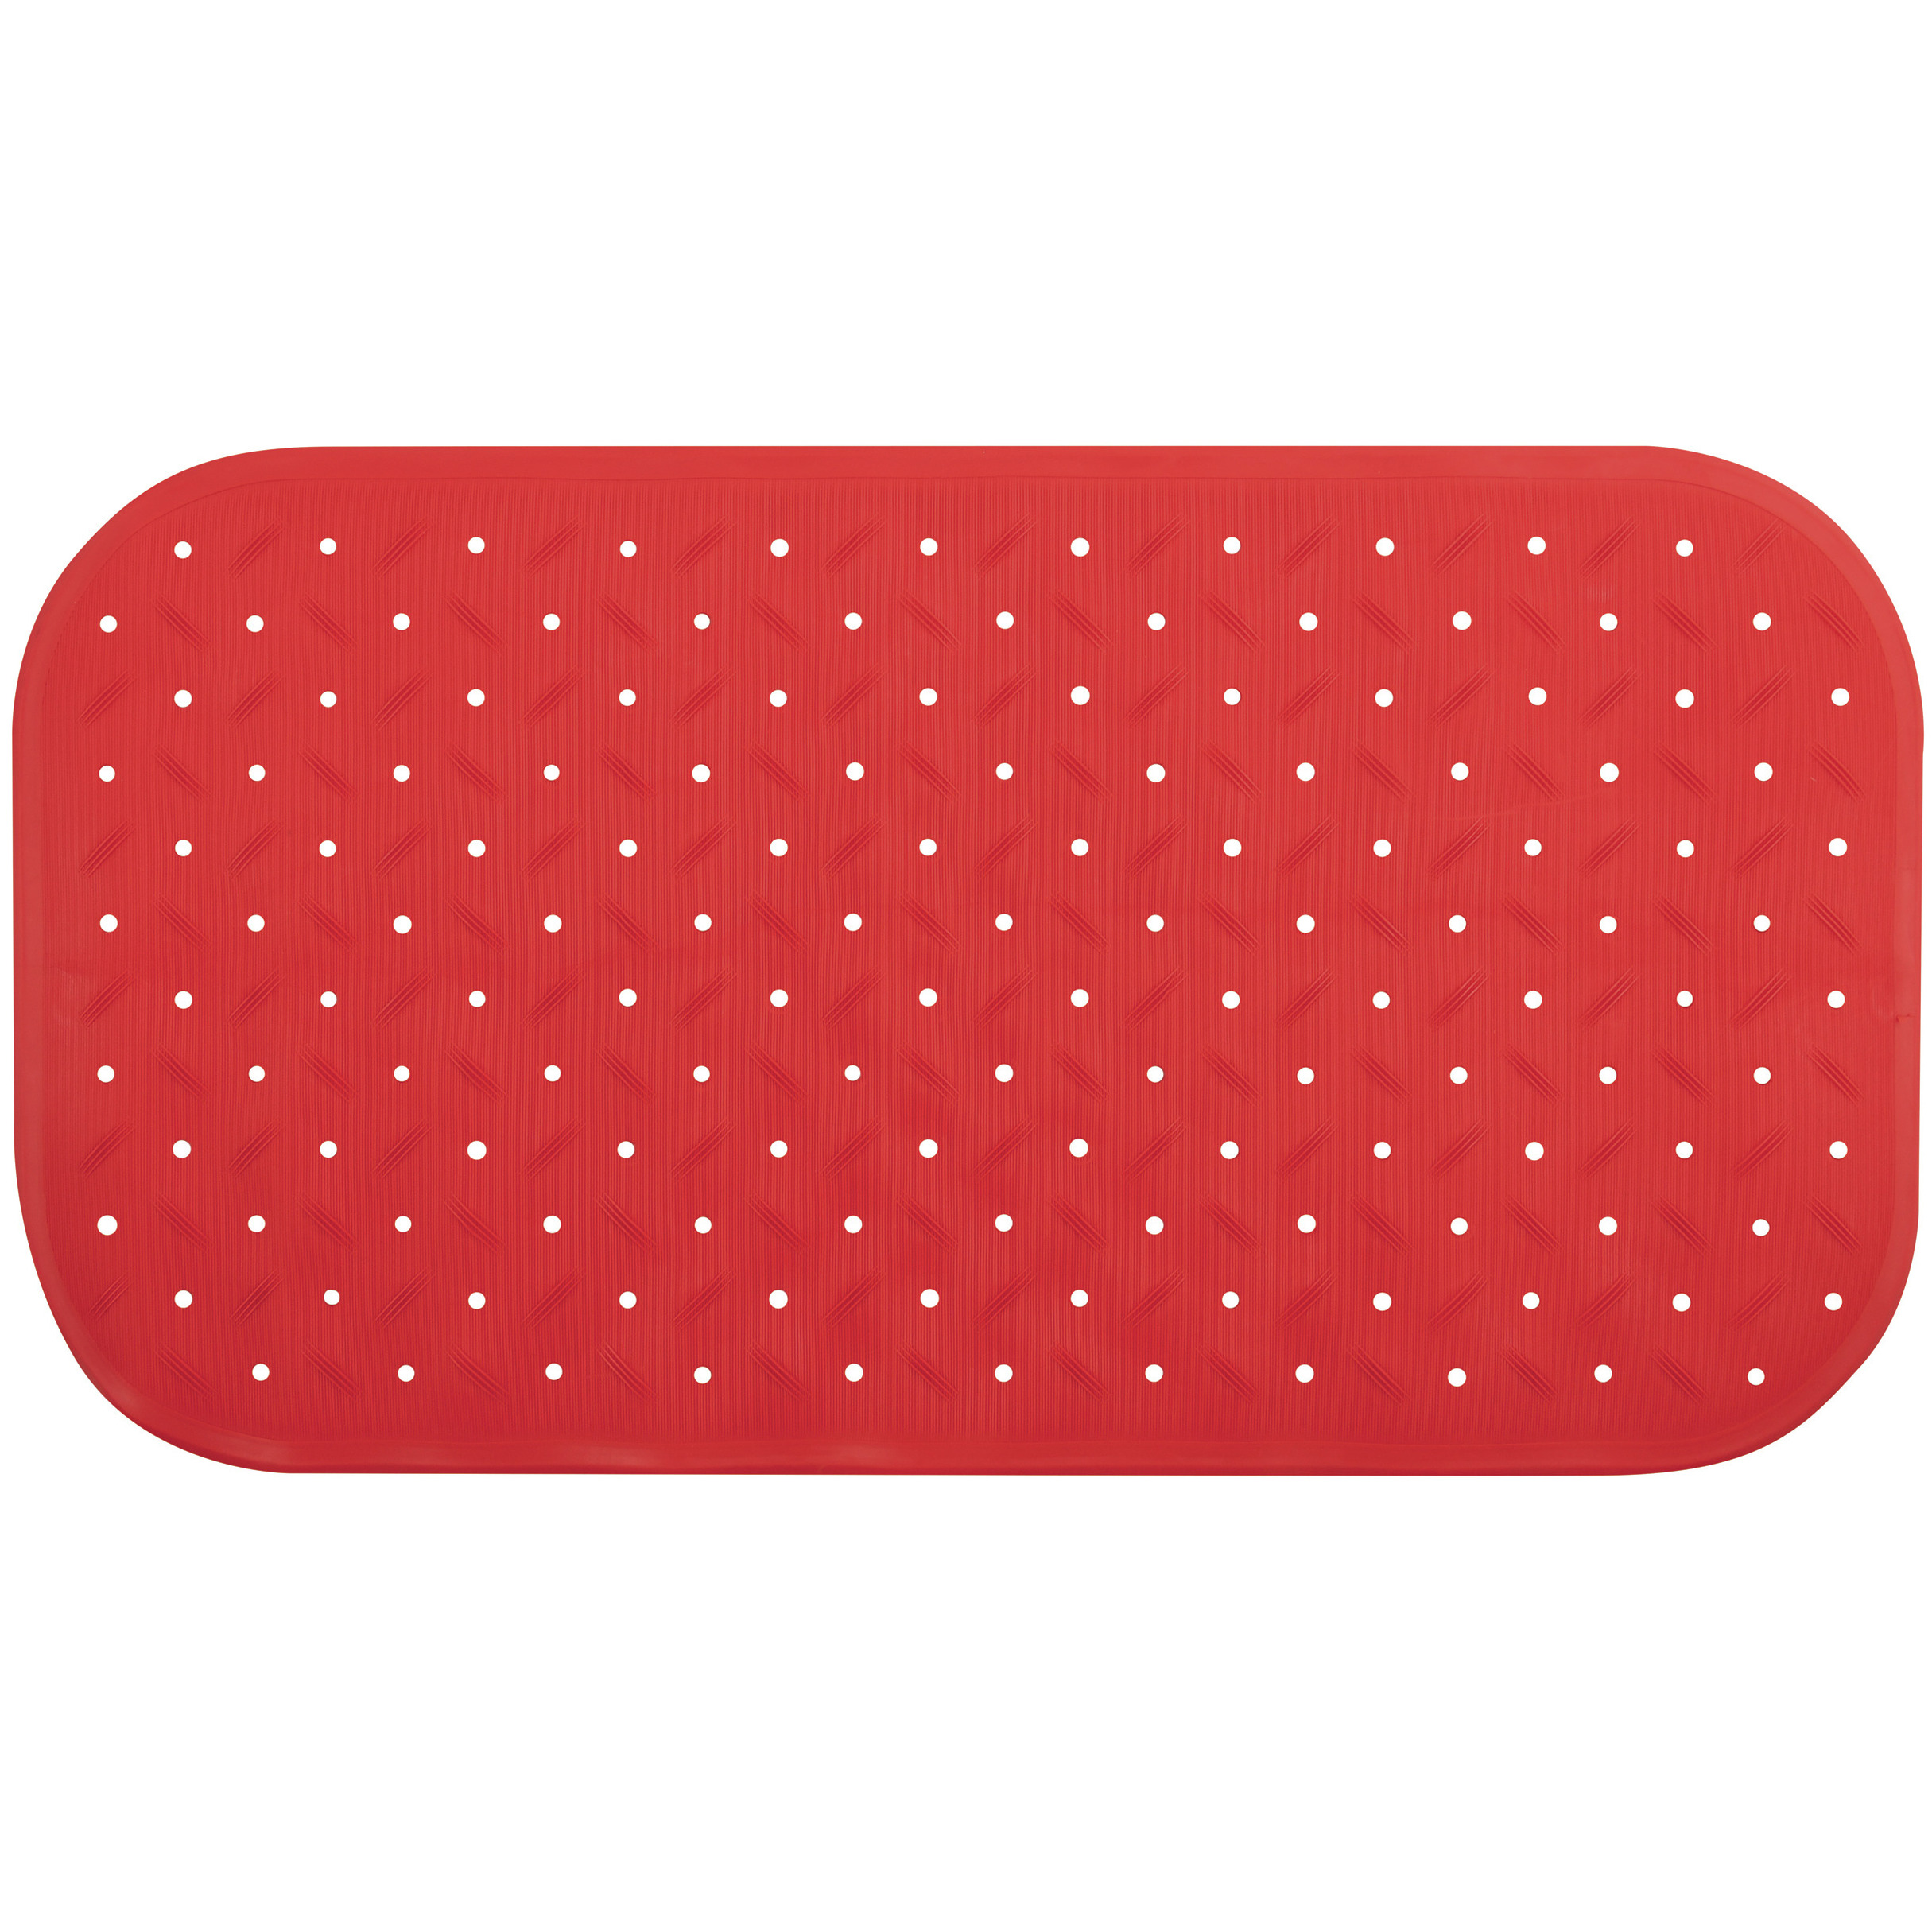 Douche-bad anti-slip mat badkamer rubber rood 36 x 65 cm rechthoek